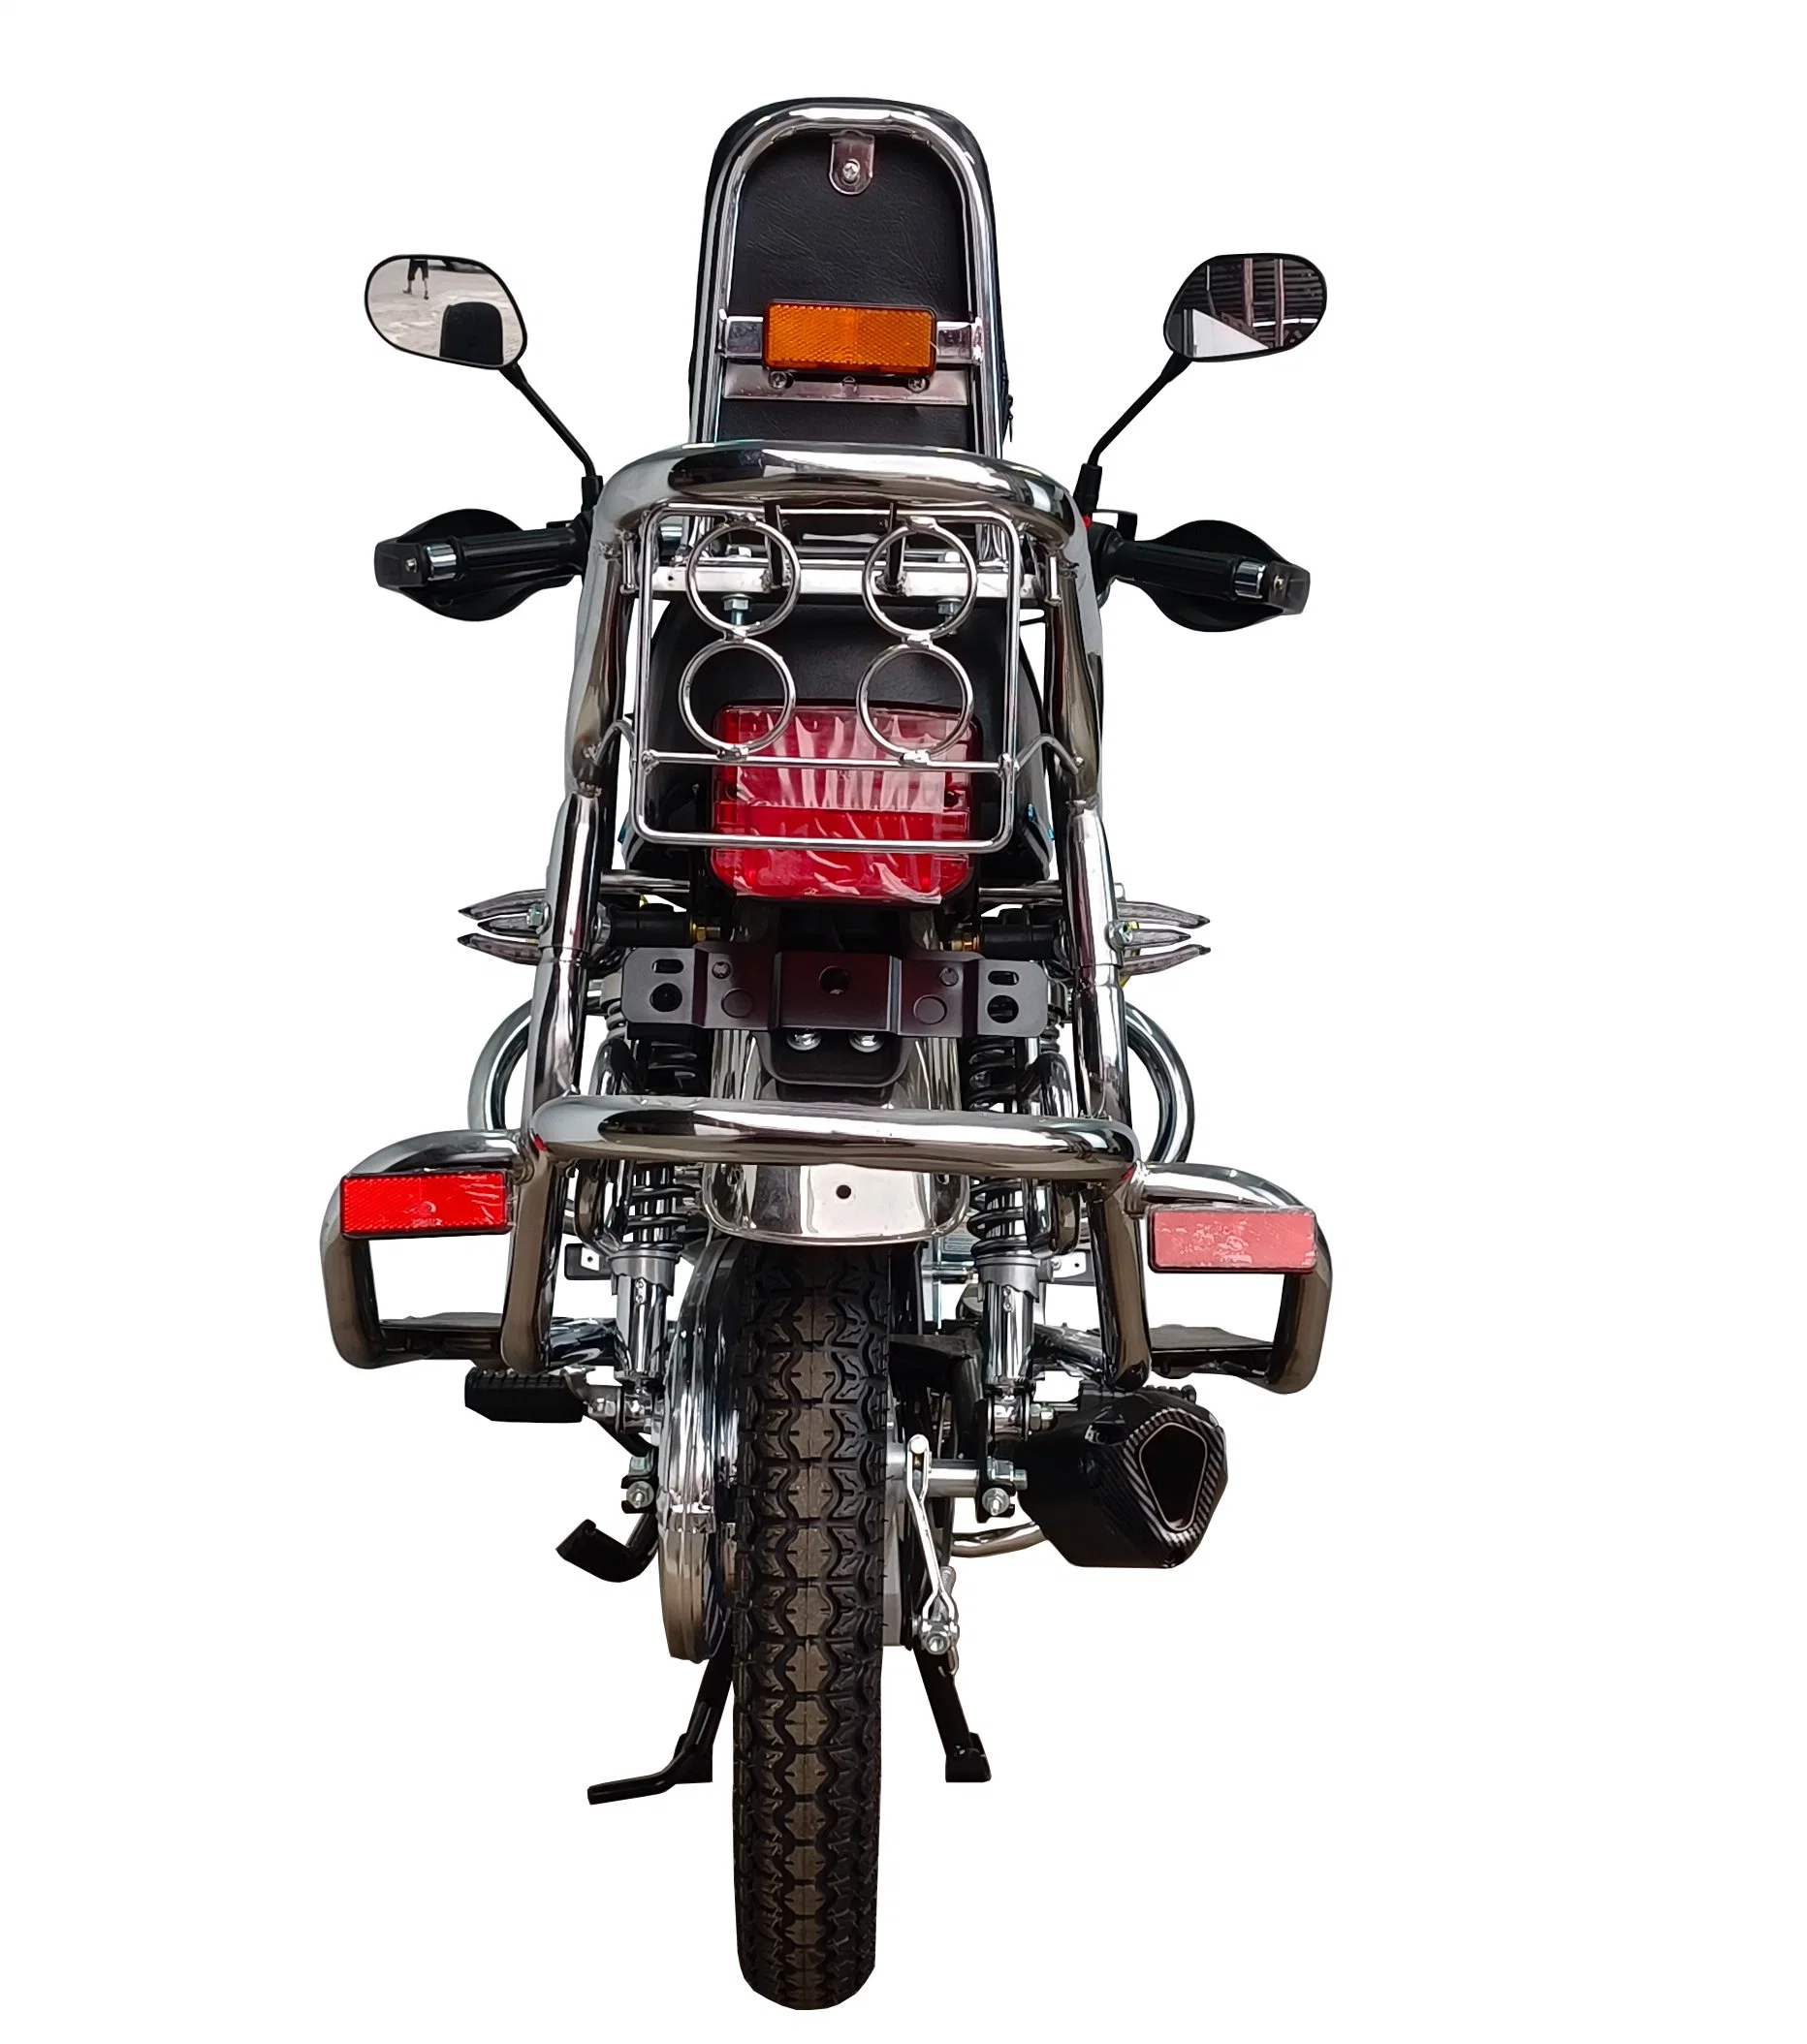 150cc de meilleure qualité gaz Retro Racing moto